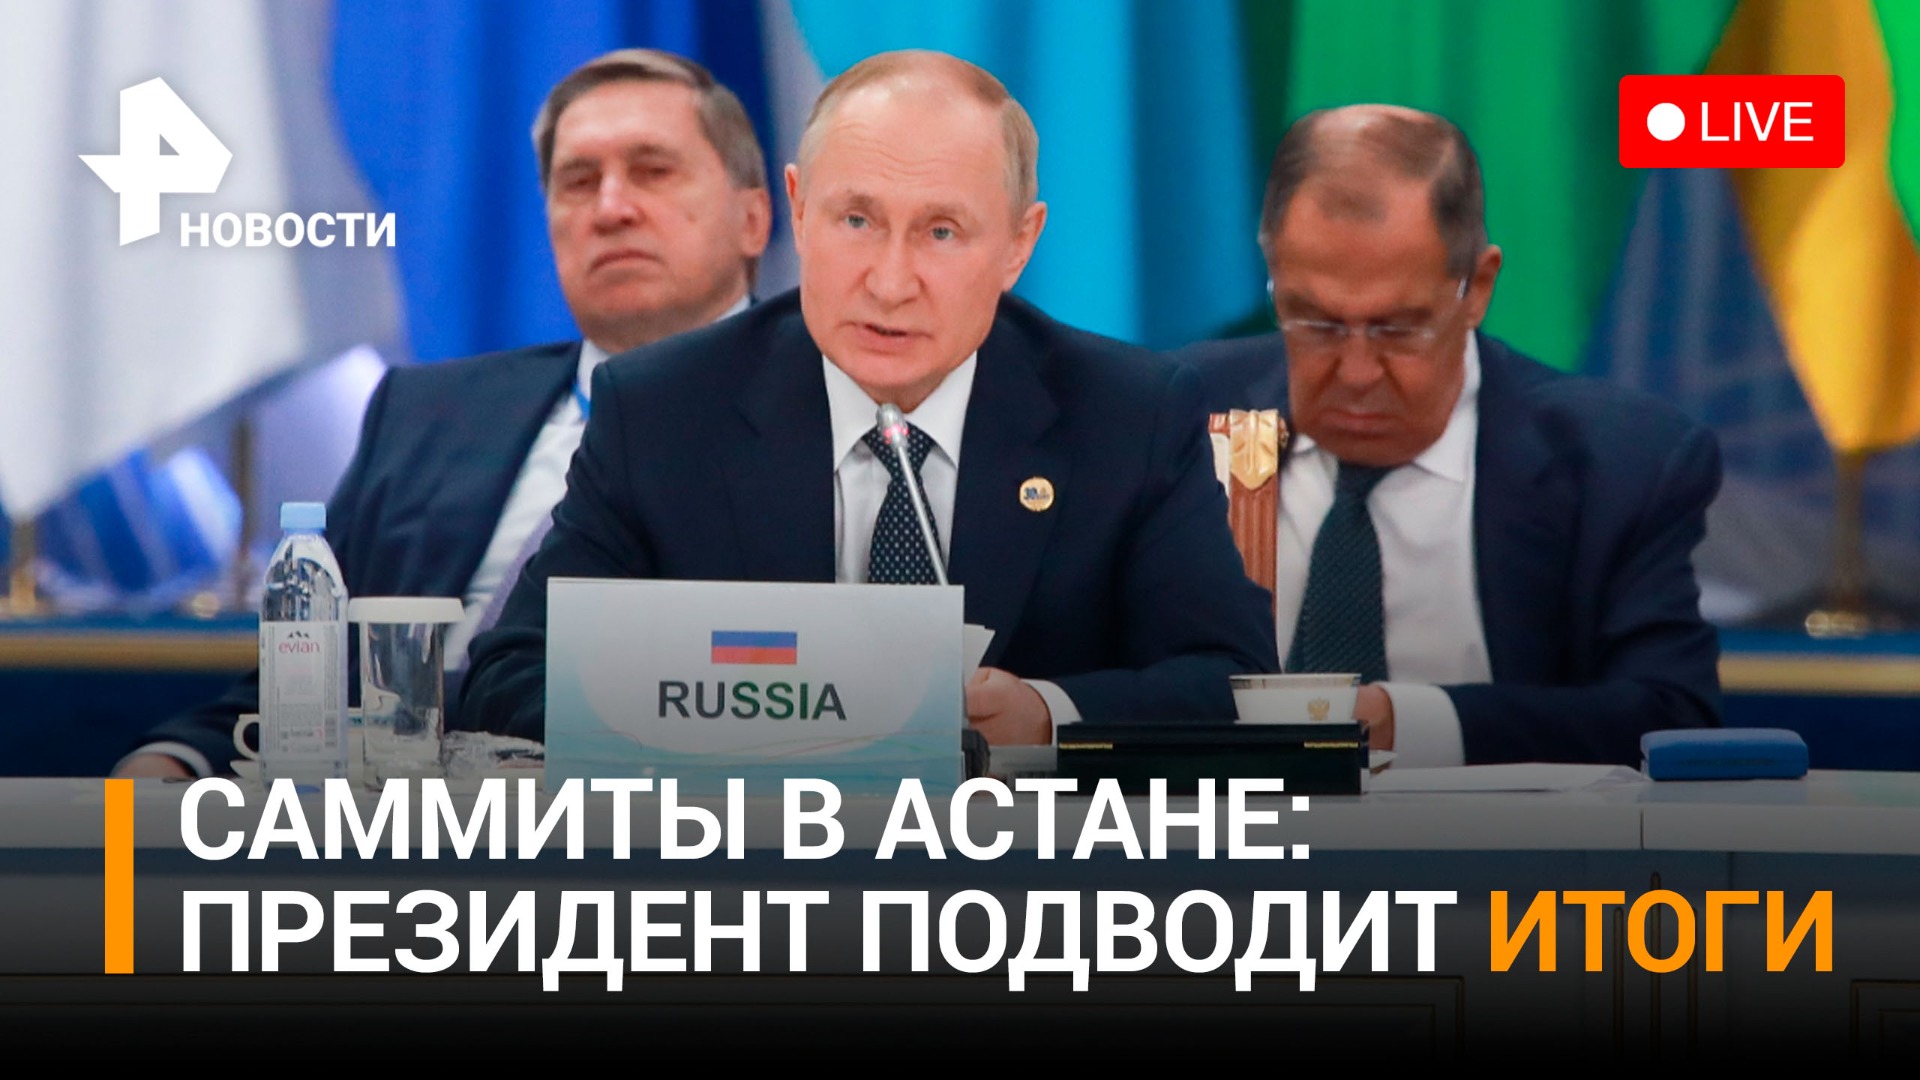 Пресс-конференция Владимира Путина в Астане: прямая трансляция / РЕН Новости